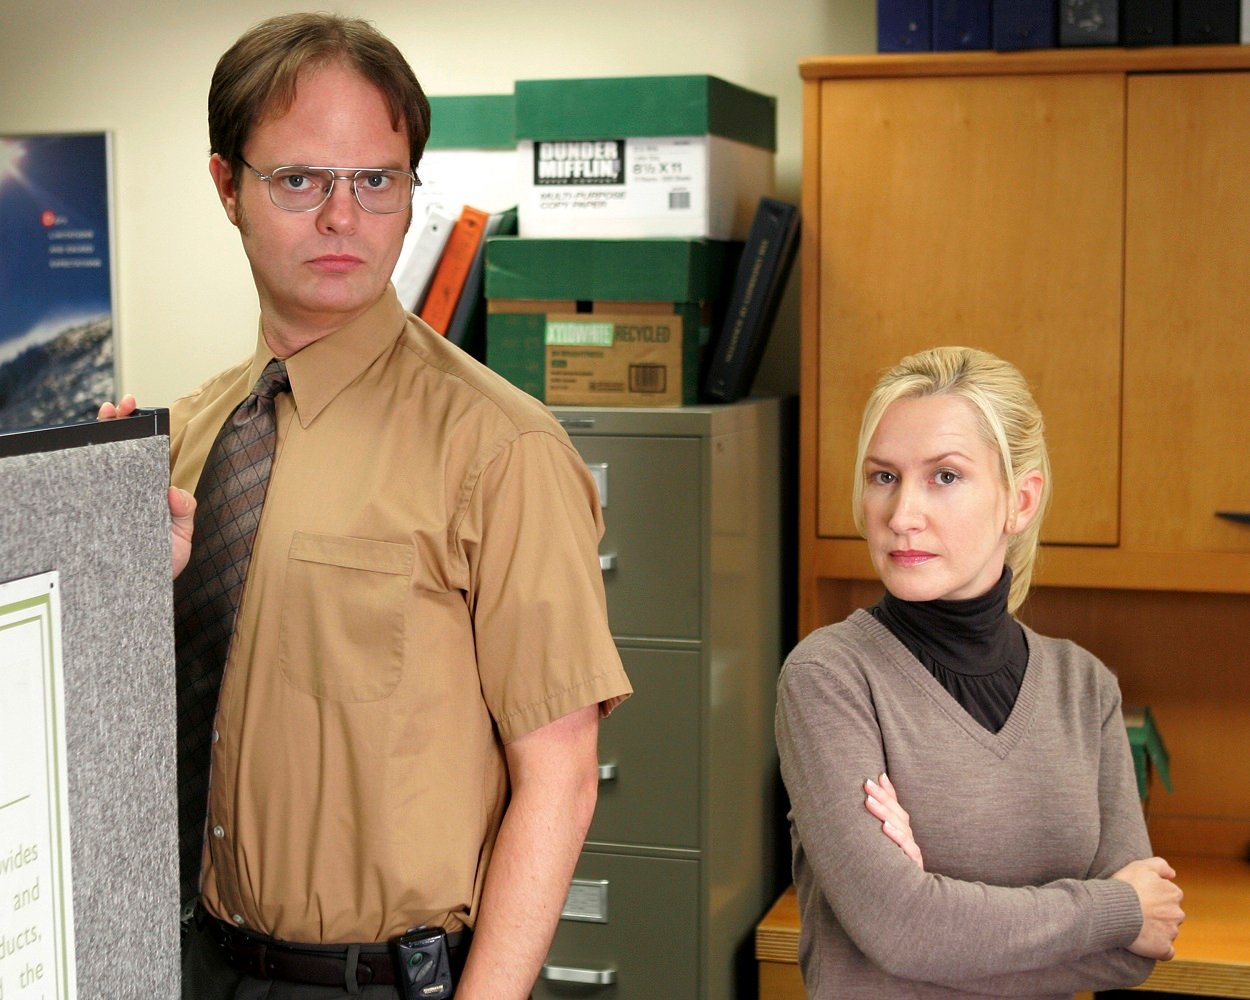 The Office cast Rainn Wilson as Dwight and Angela Kinsey as Angela